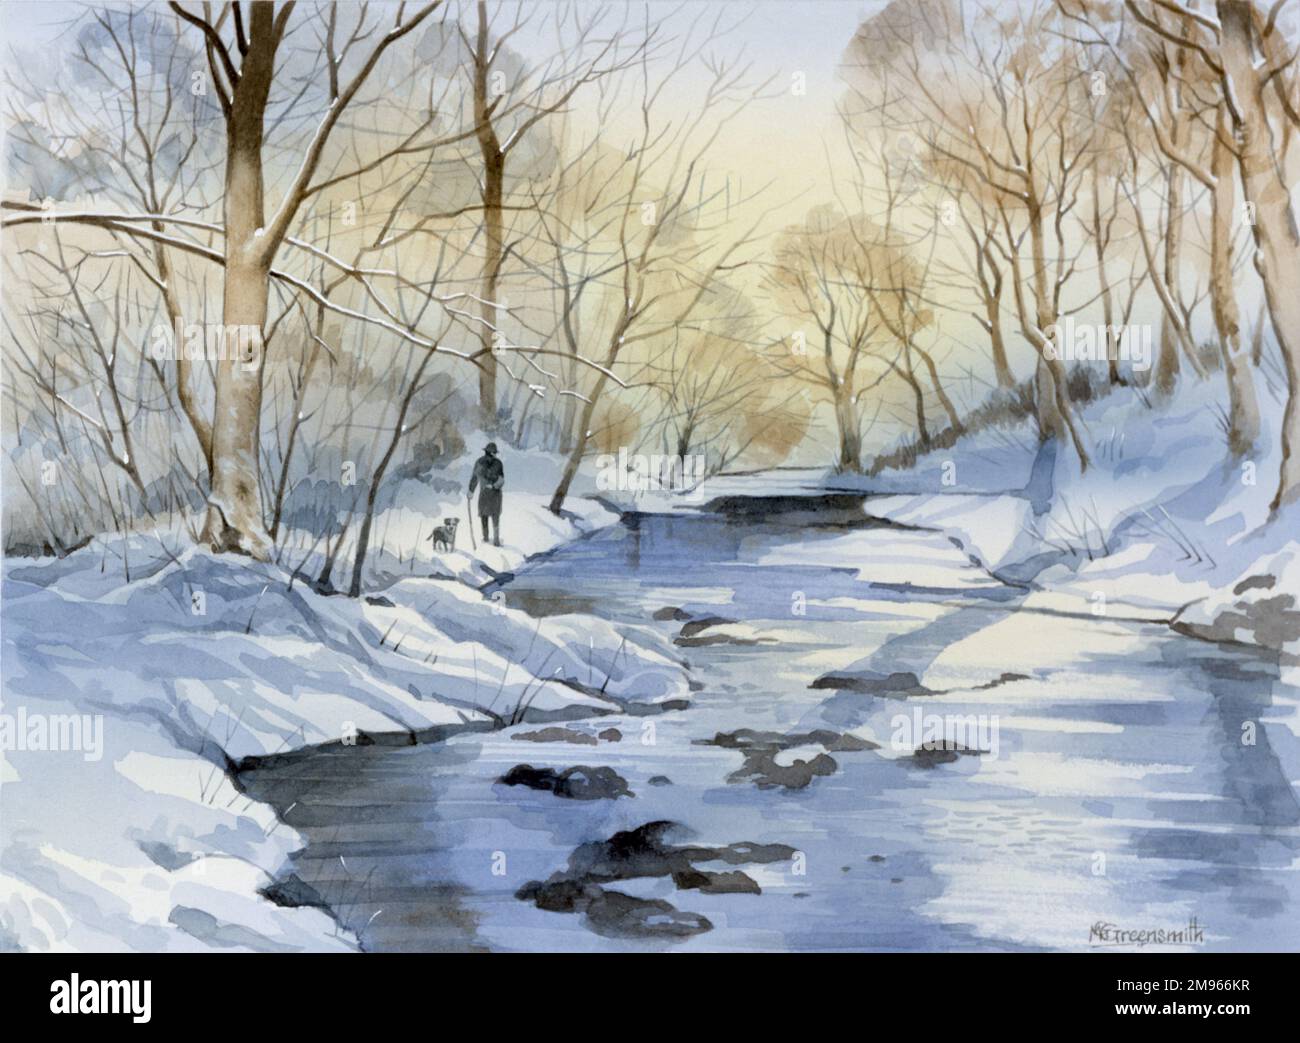 Ein alter Mann mit einem Gehstock führt seinen Hund in dieser winterlichen Szene am Ufer eines eisigen, teilweise gefrorenen Bachs entlang. Malerei von Malcolm Greensmith Stockfoto